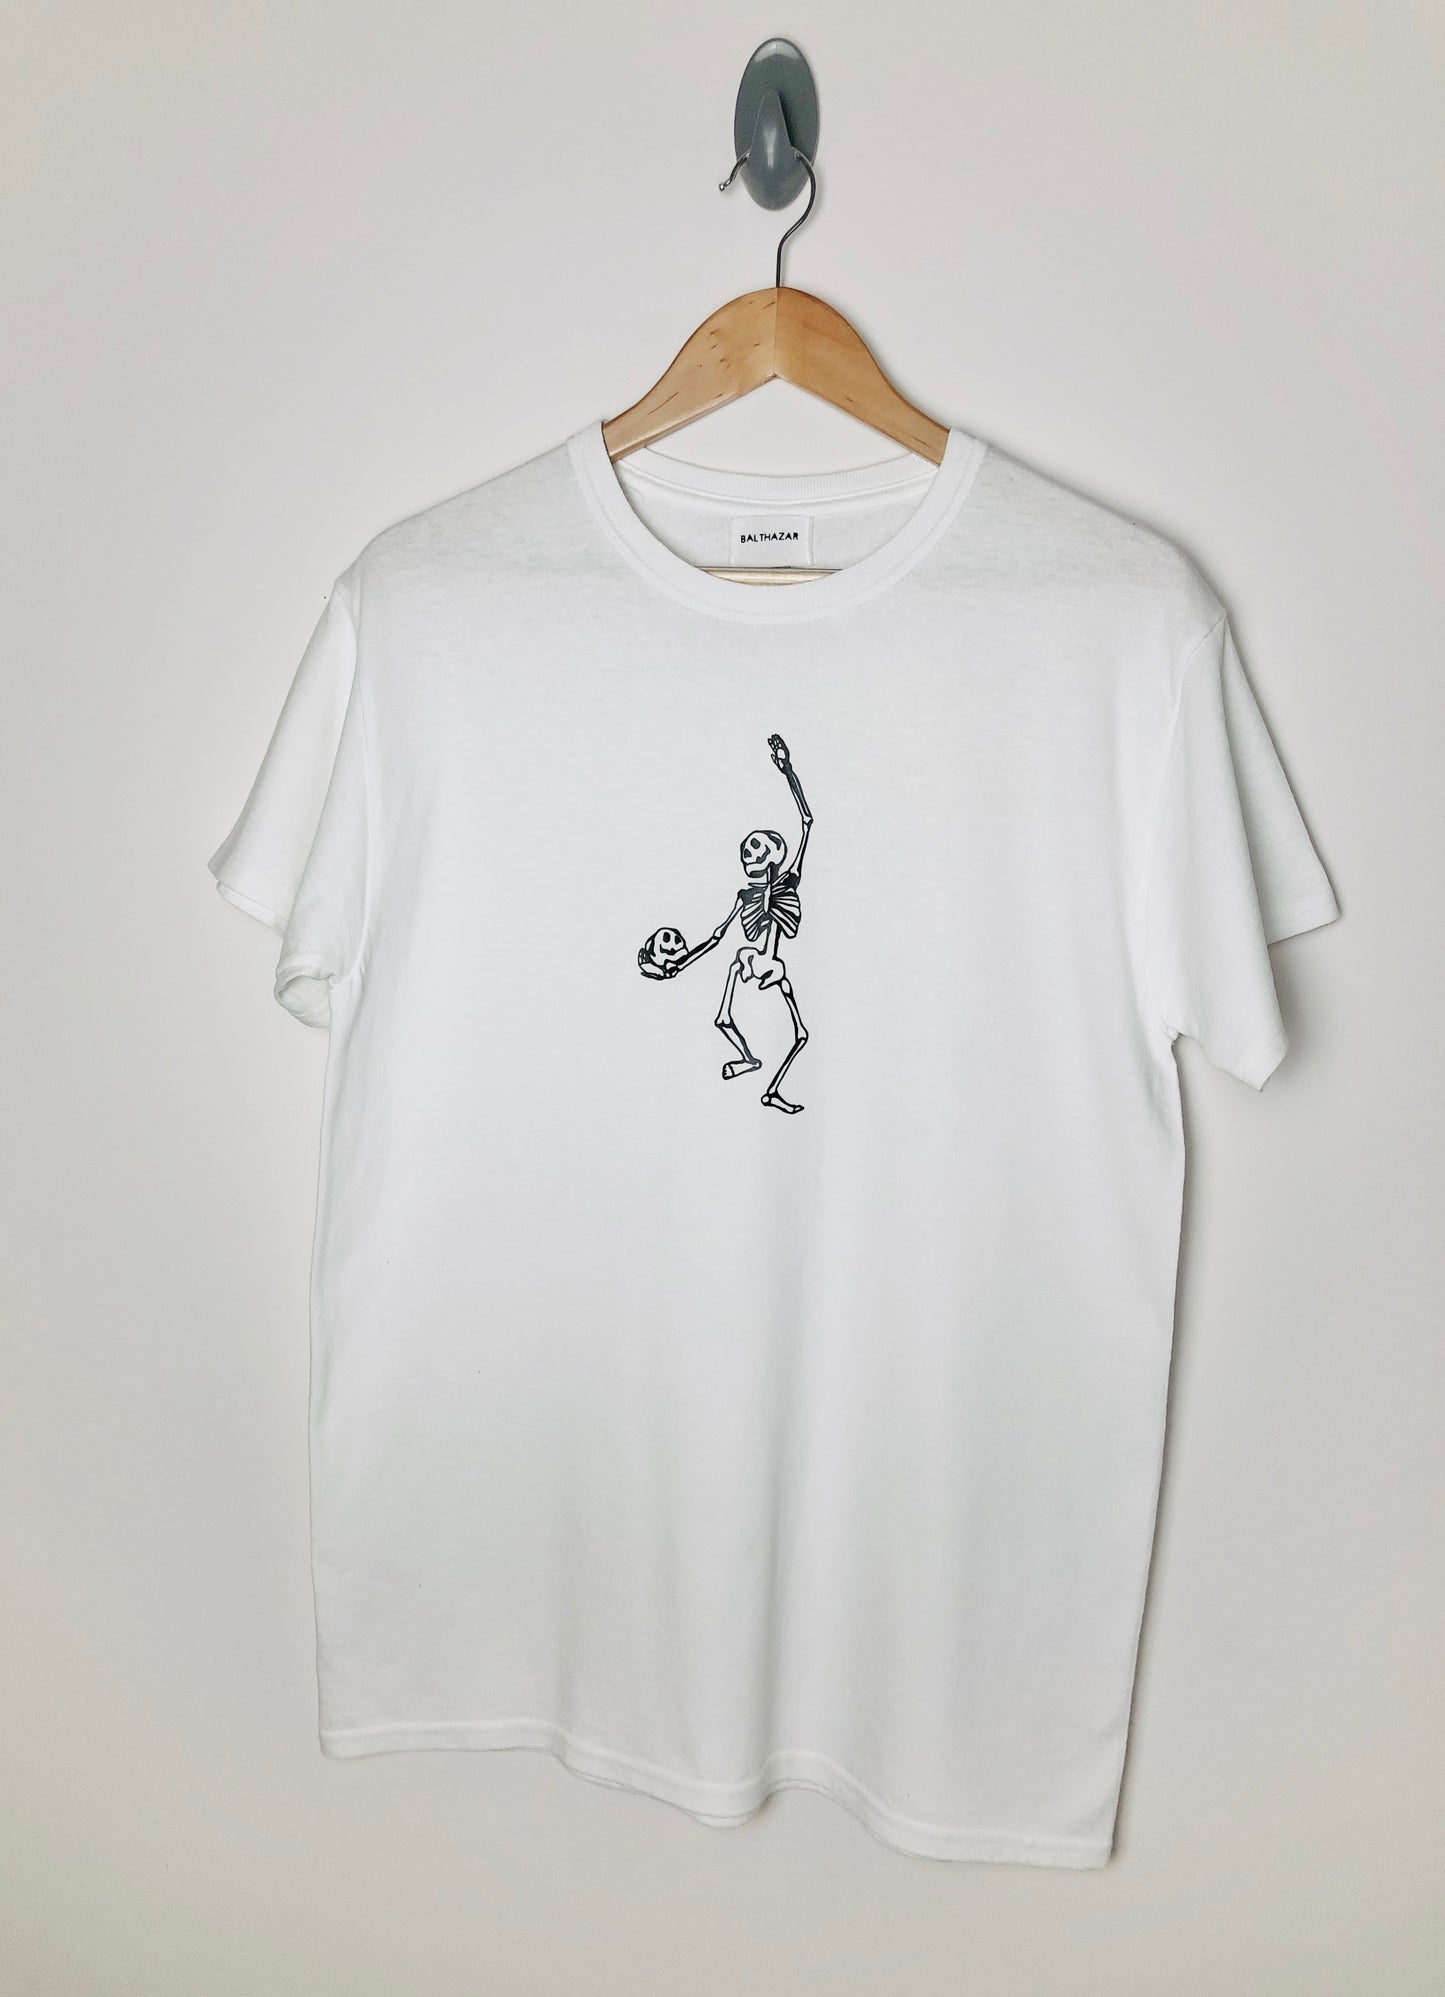 Dancing skeleton t-shirt - Unisex -